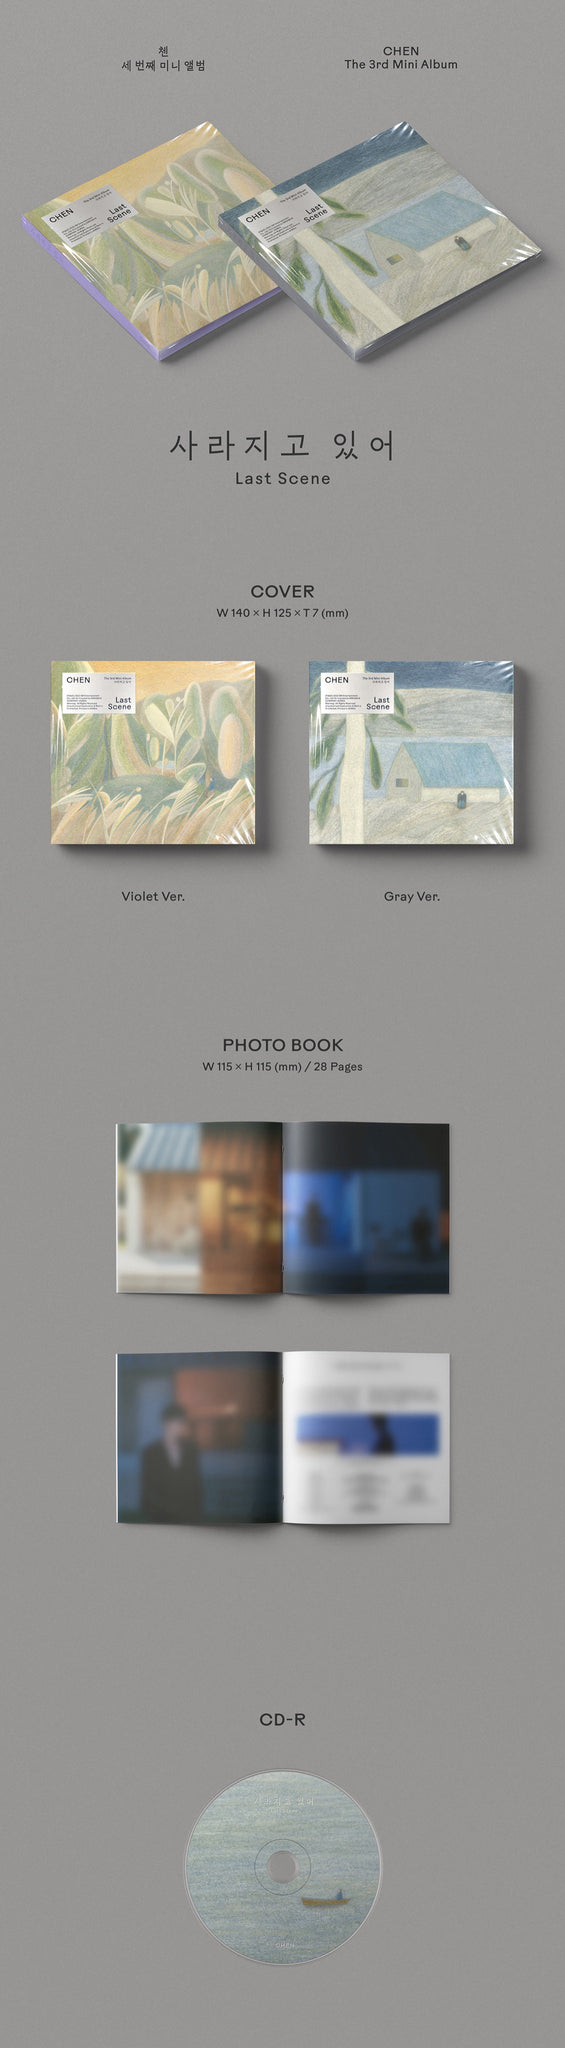 Chen 3rd Mini Album Last Scene (Digipack Version) Inclusions Cover Photobook CD